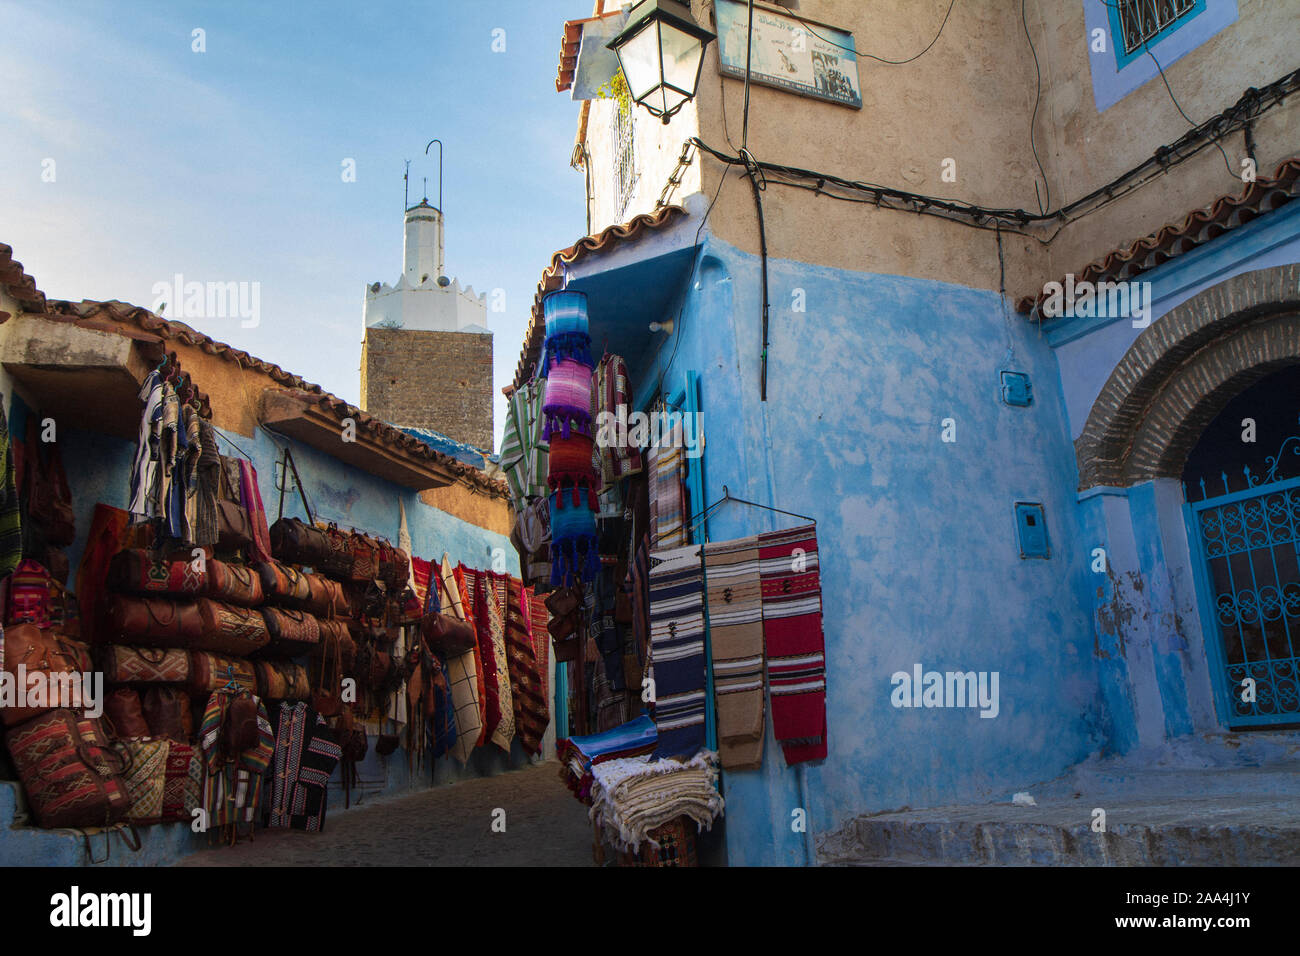 Vue d'un coin de Chefchauen, 'the blue pearl' dans les montagnes du Maroc. Suspendu à des murs il y a des éléments typiques qui sont à vendre en ville Banque D'Images